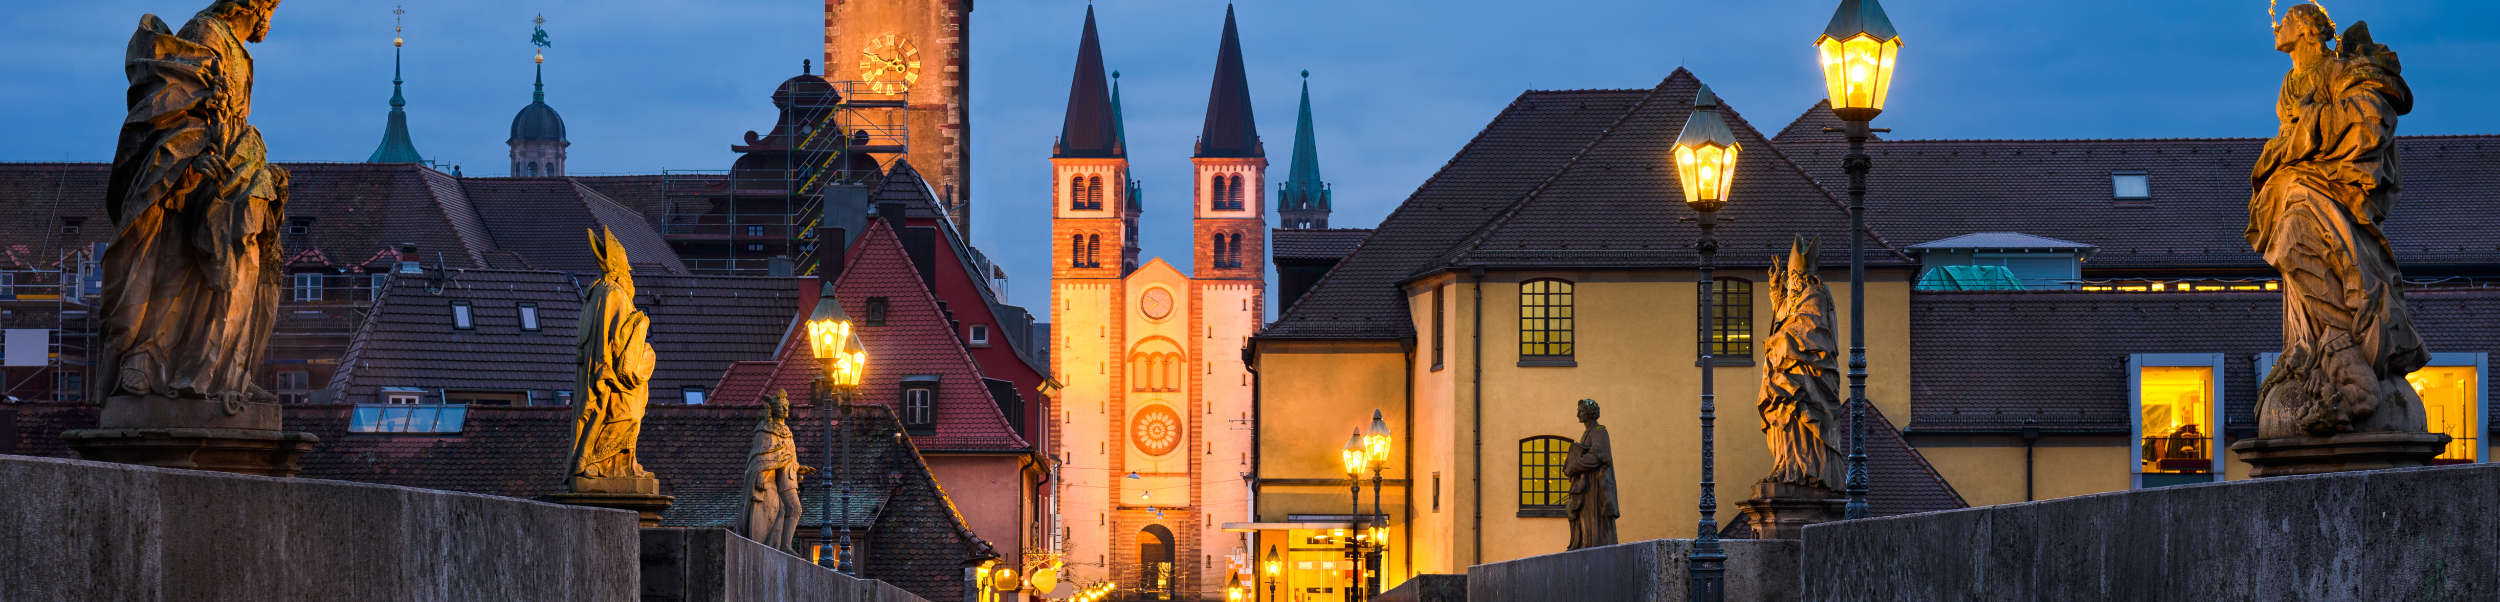 Das Bild zeigt die Stadt Würzburg